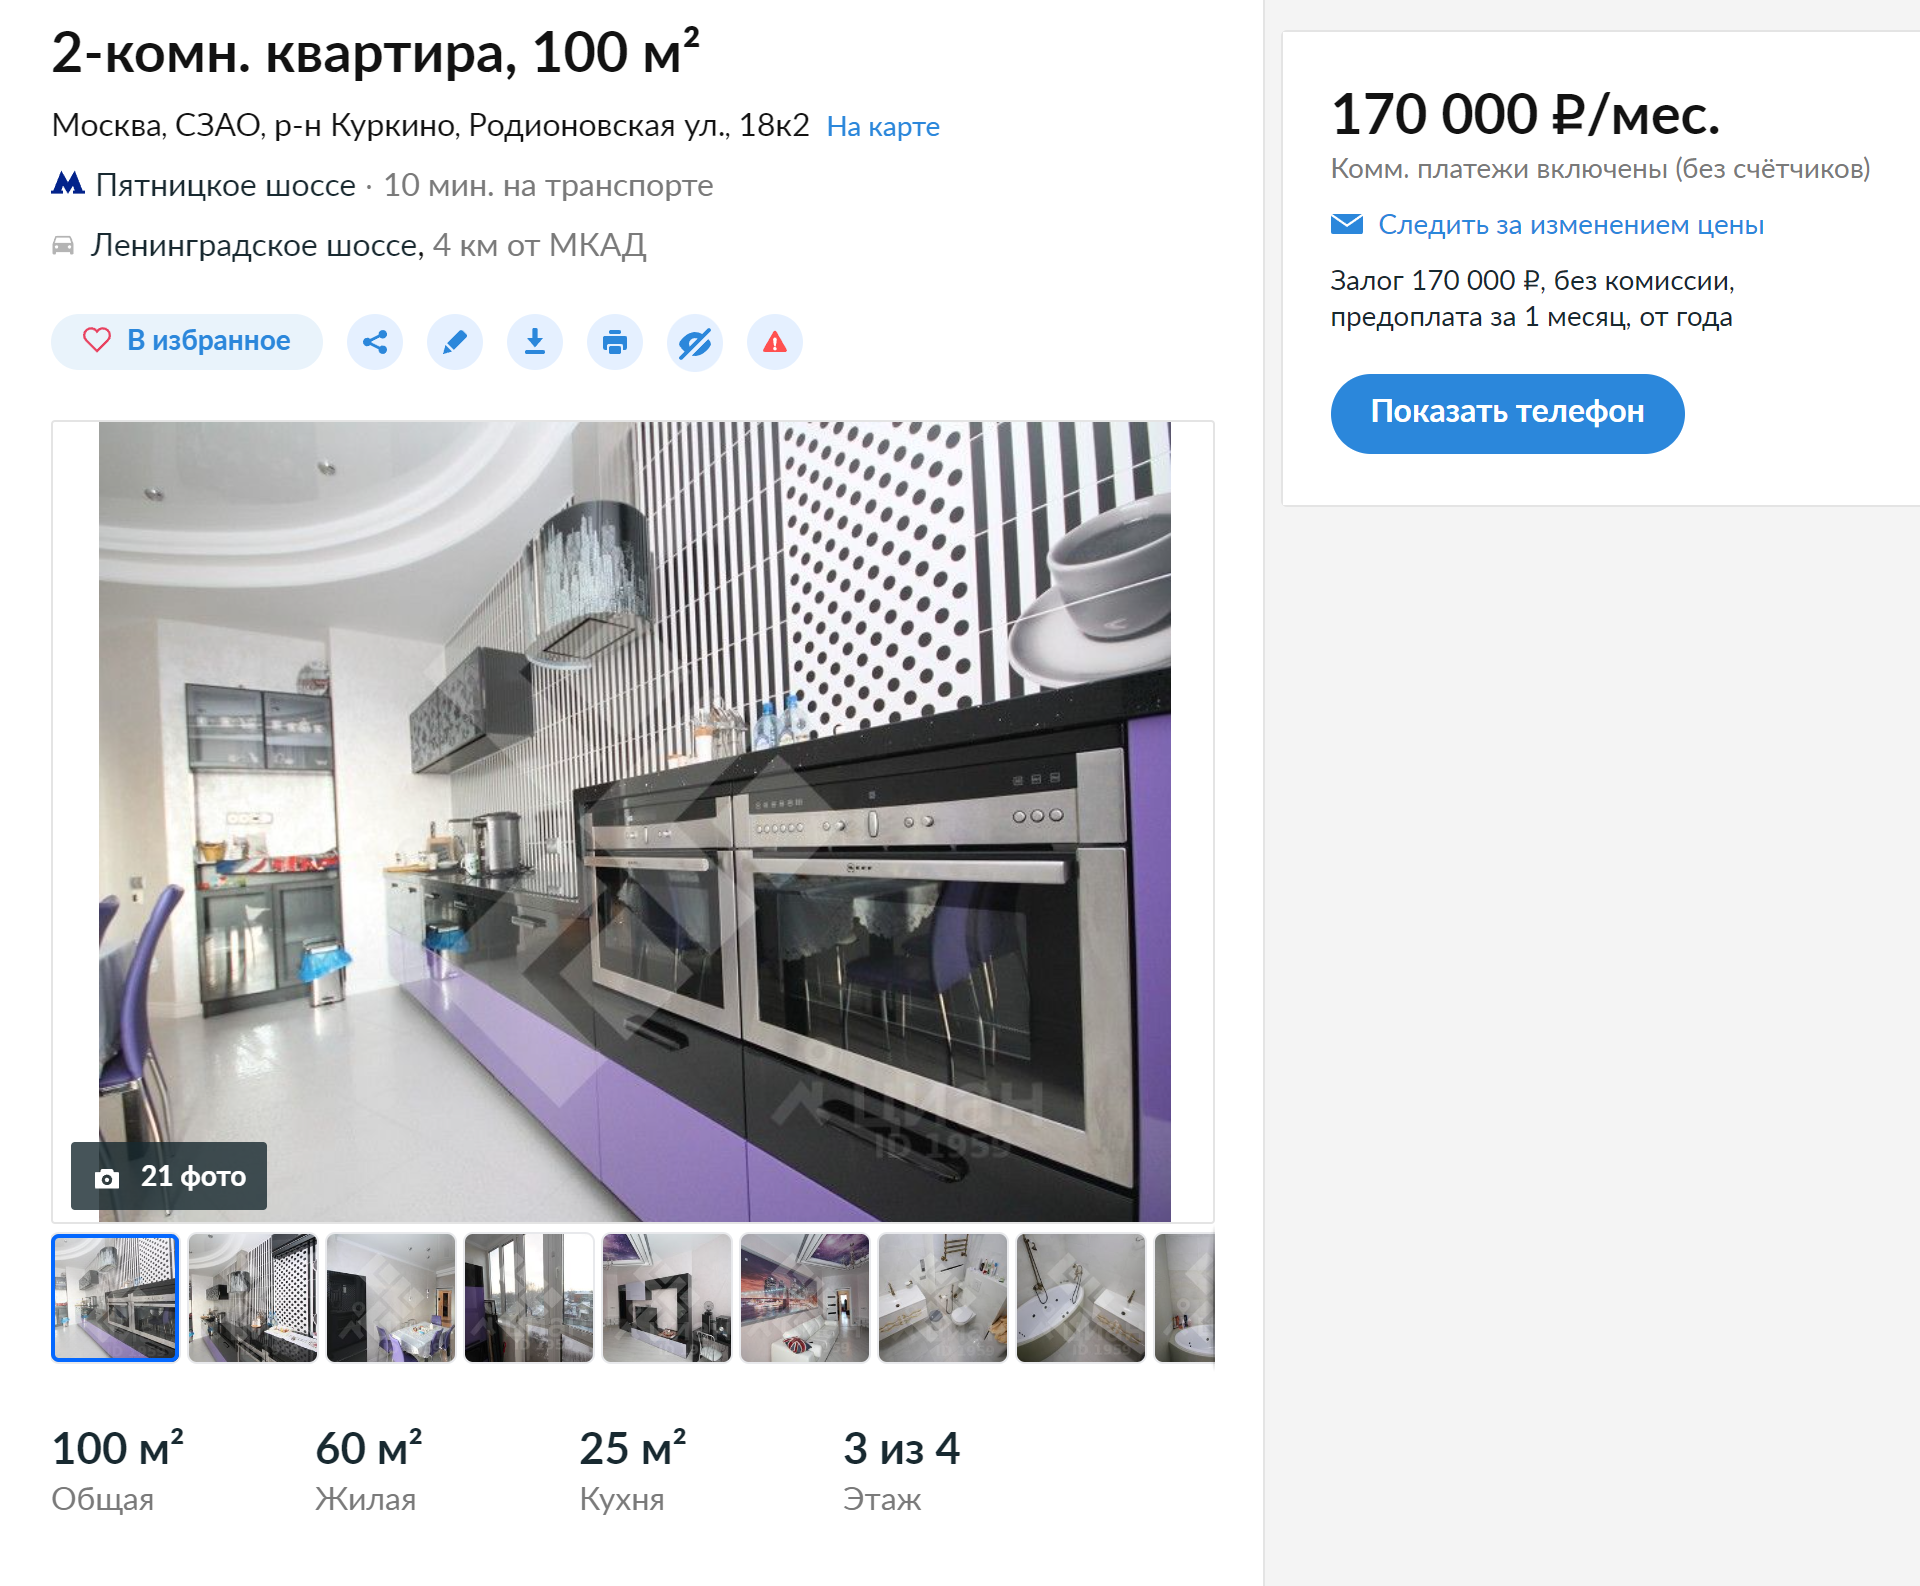 Двушка 100 м². Одна только кухня занимает тут четверть площади. Источник: cian.ru